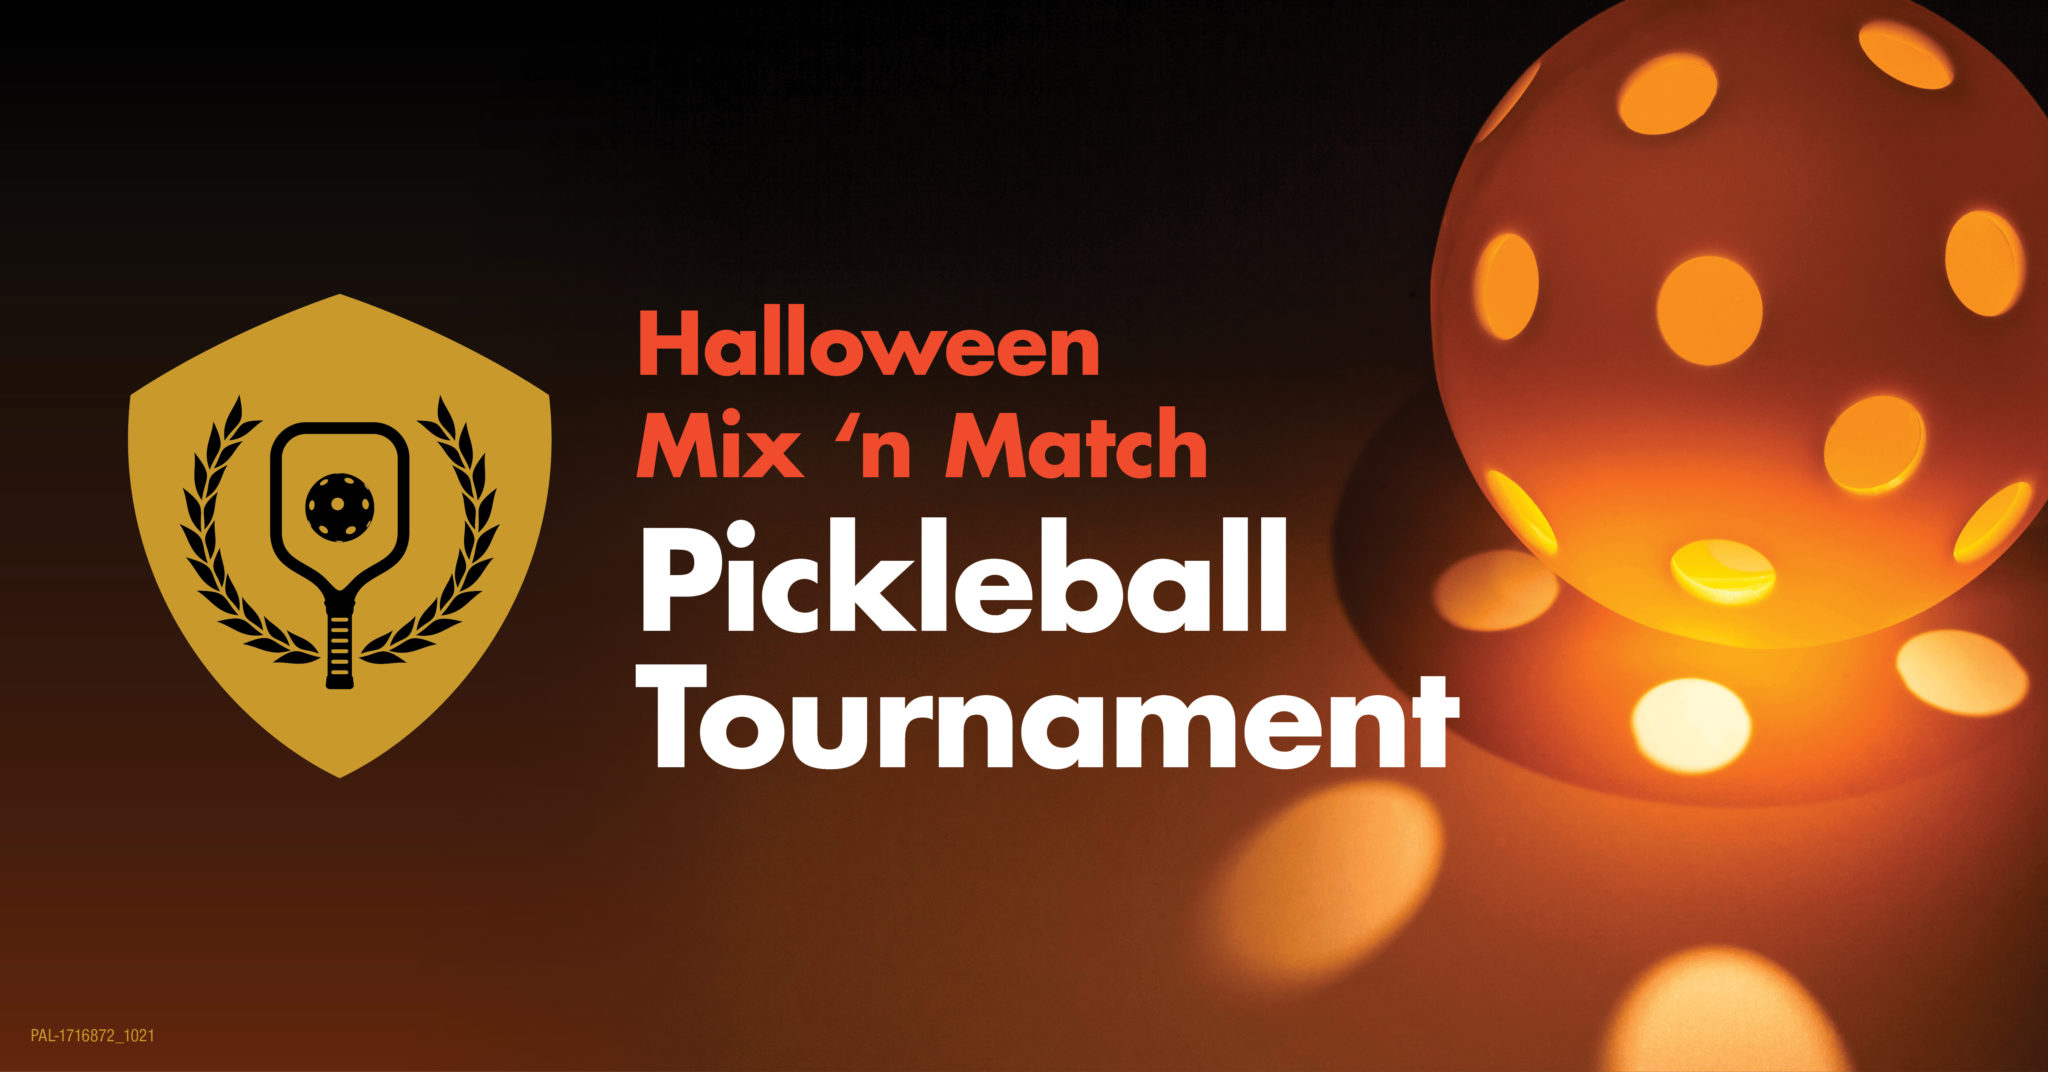 Halloween Mix ‘n Match Pickleball Tournament